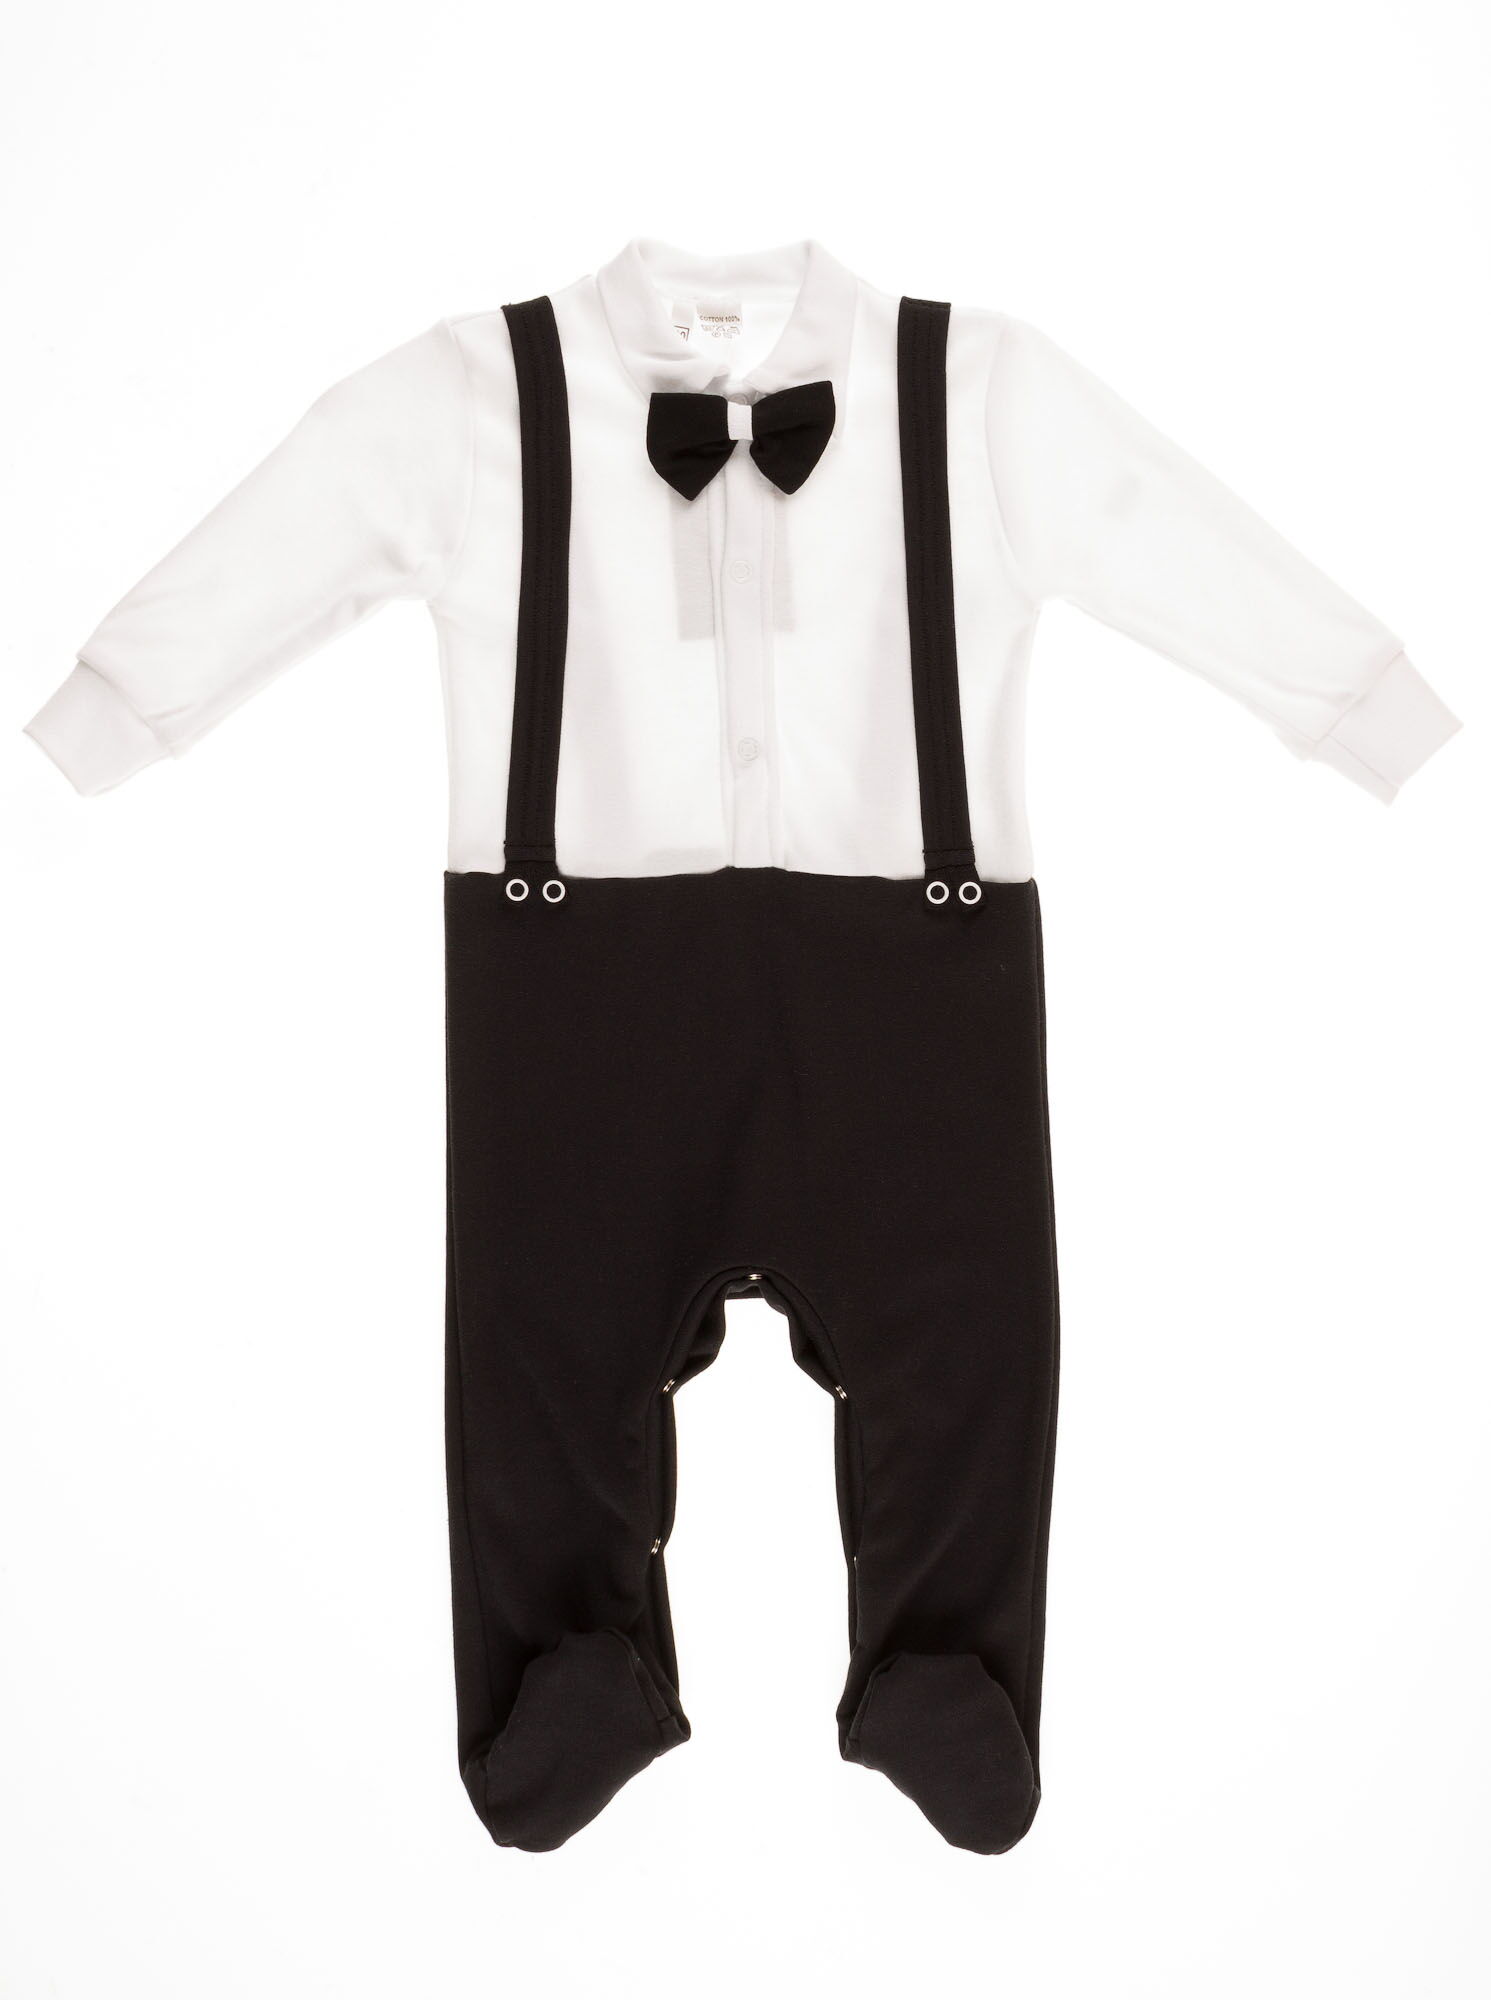 Человечек для мальчика Family Pupchik Джентельмен черный 9001 - цена